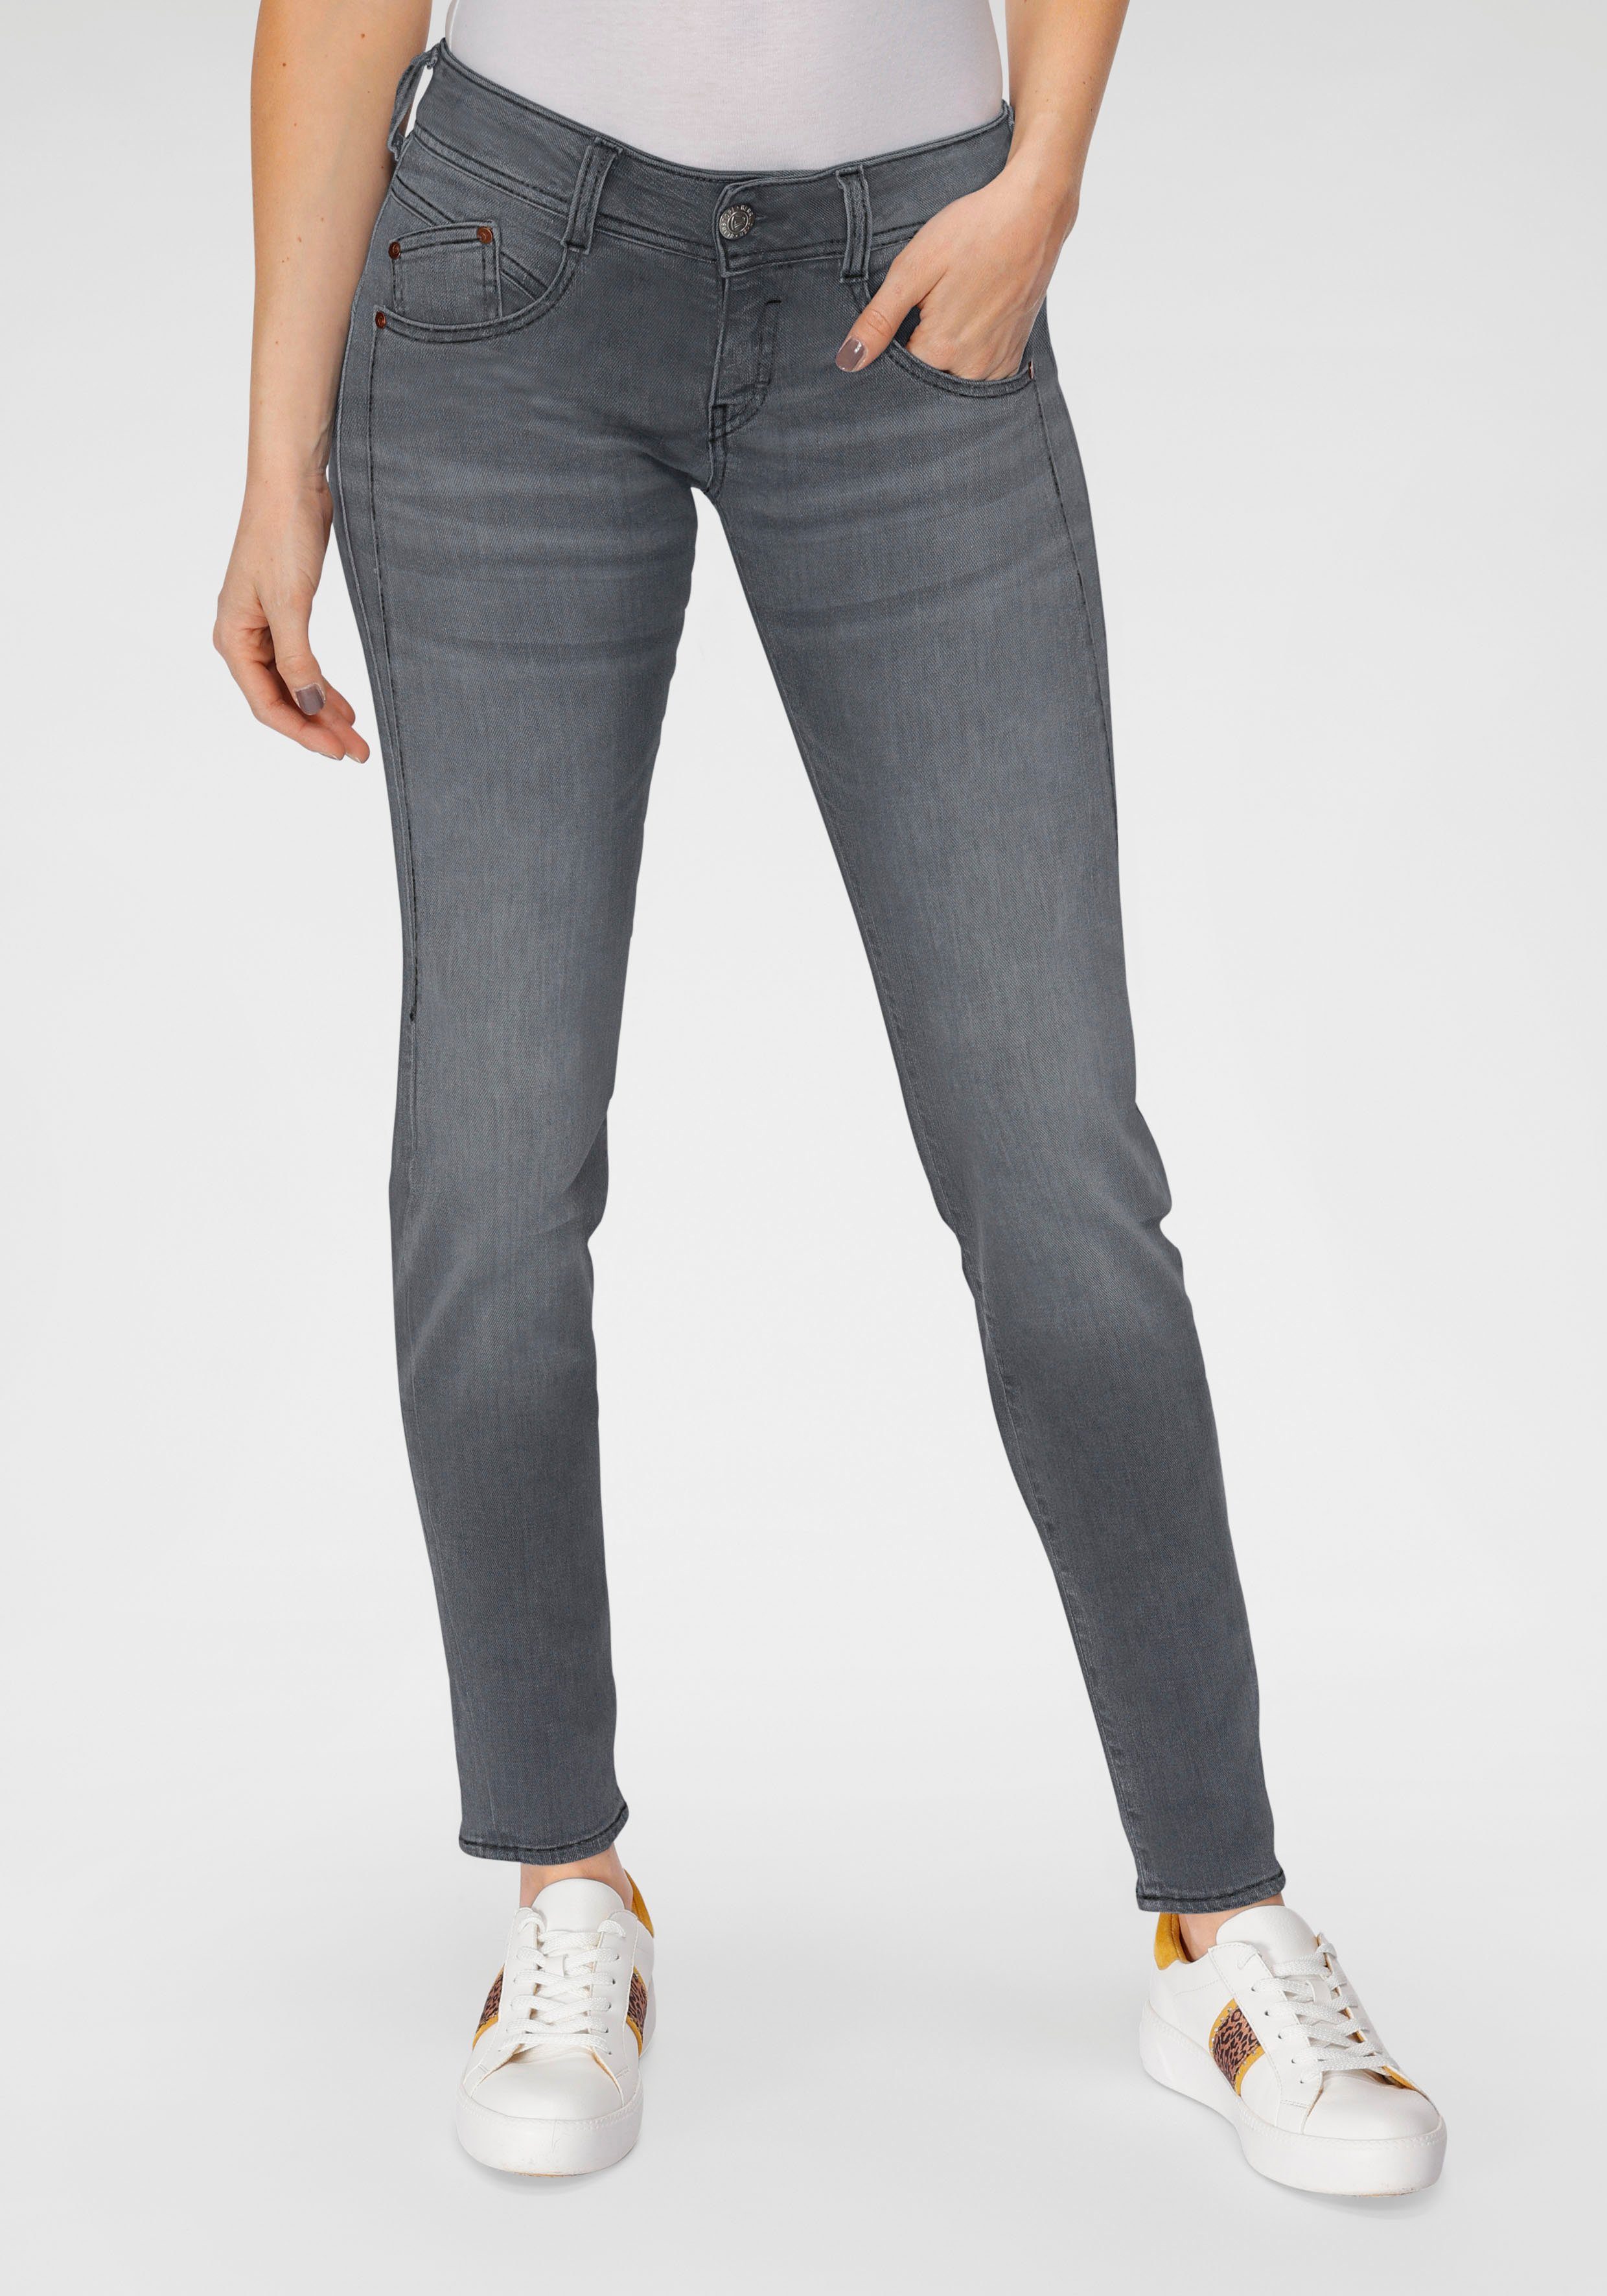 Herrlicher Slim-fit-Jeans »GILA SLIM DENIM BLACK CASHMERE TOUCH« mit  optischem Schlankeffekt dank Keileinsatz online kaufen | OTTO